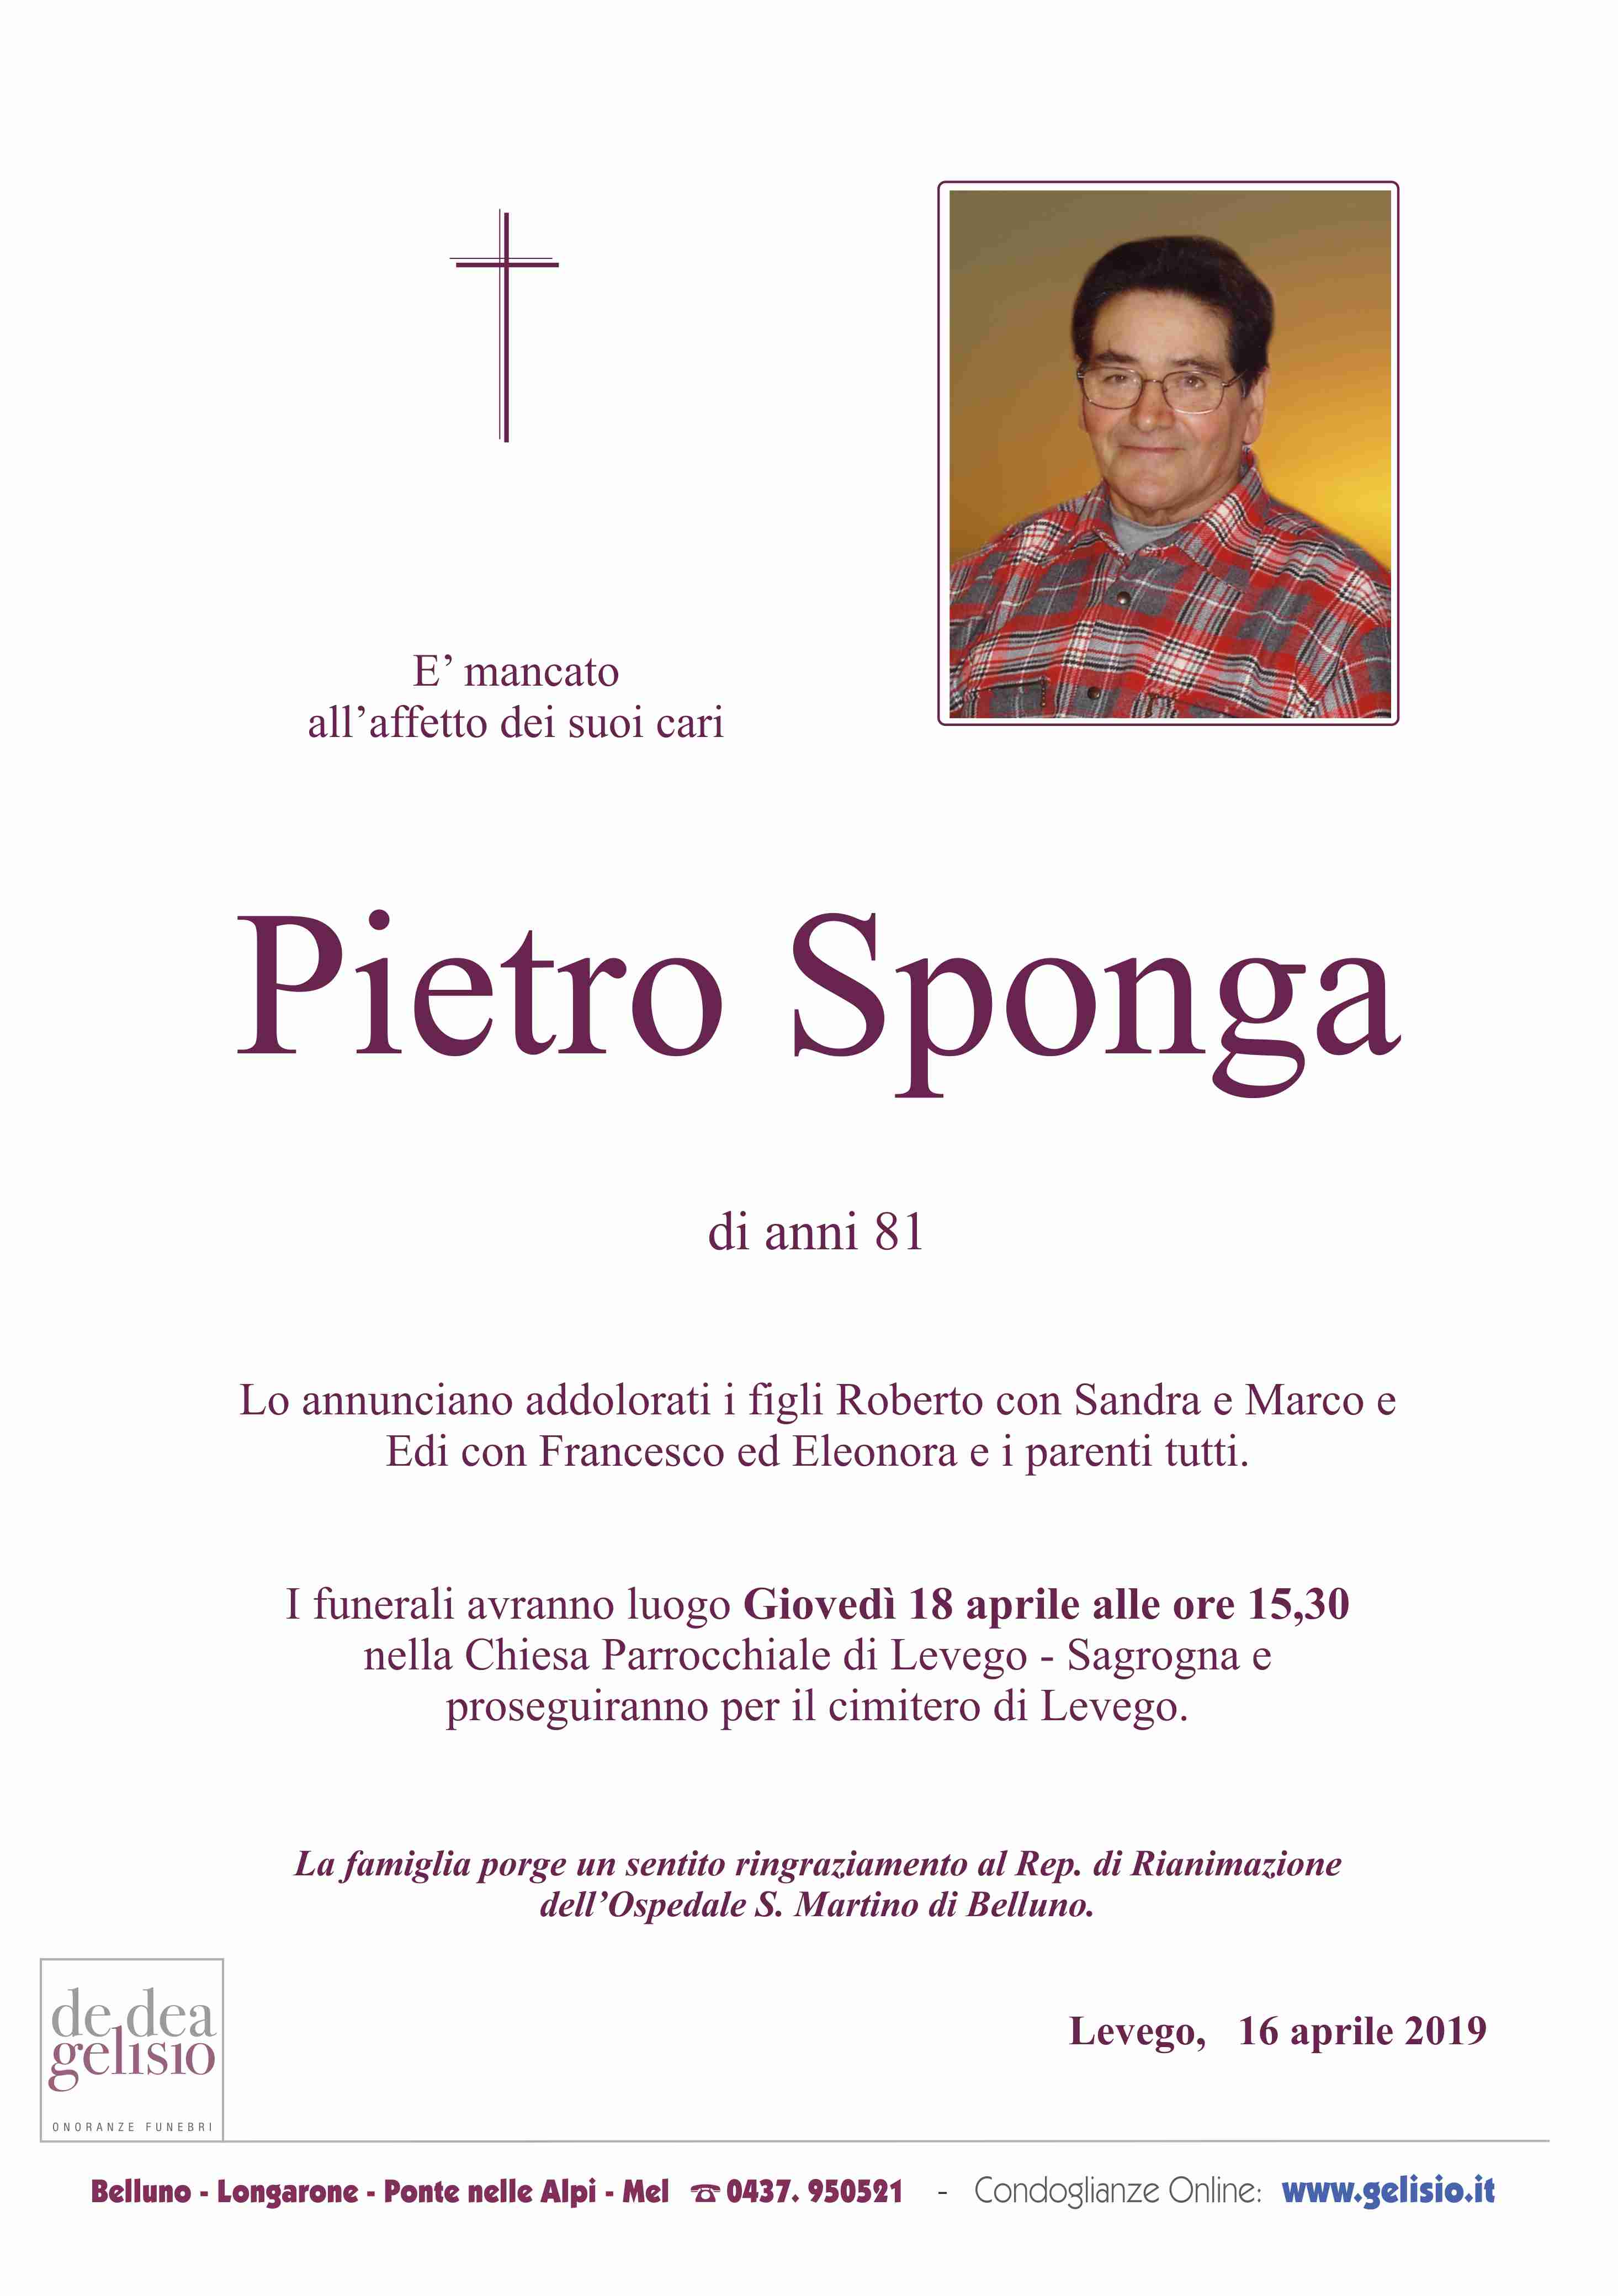 Sponga_Pietro.jpg